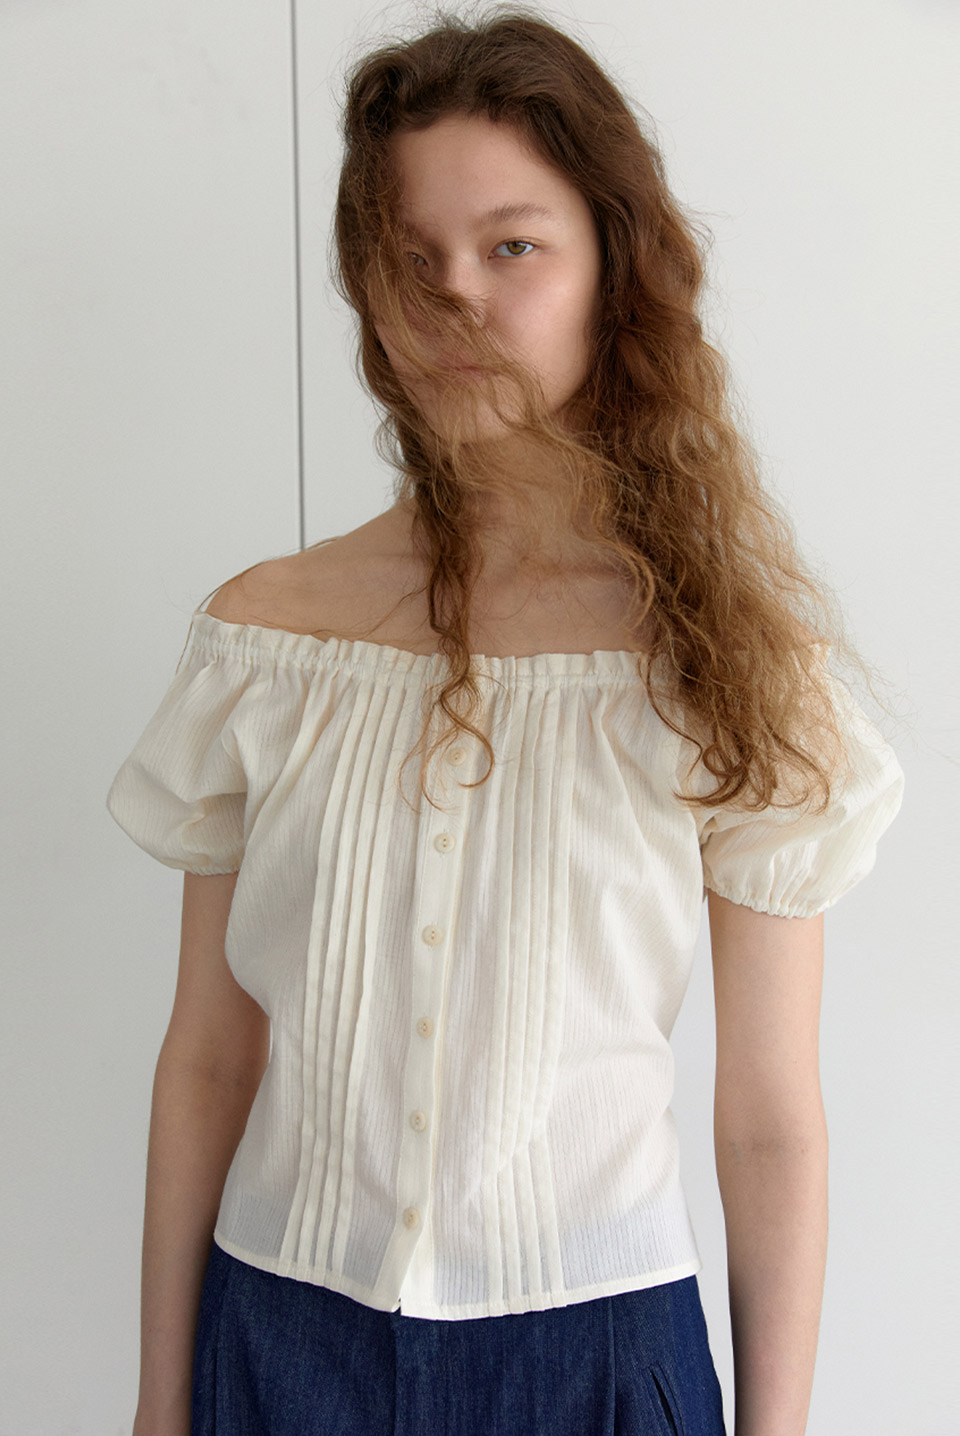 10th / pintuck shoulder blouse - creamBRENDA BRENDEN